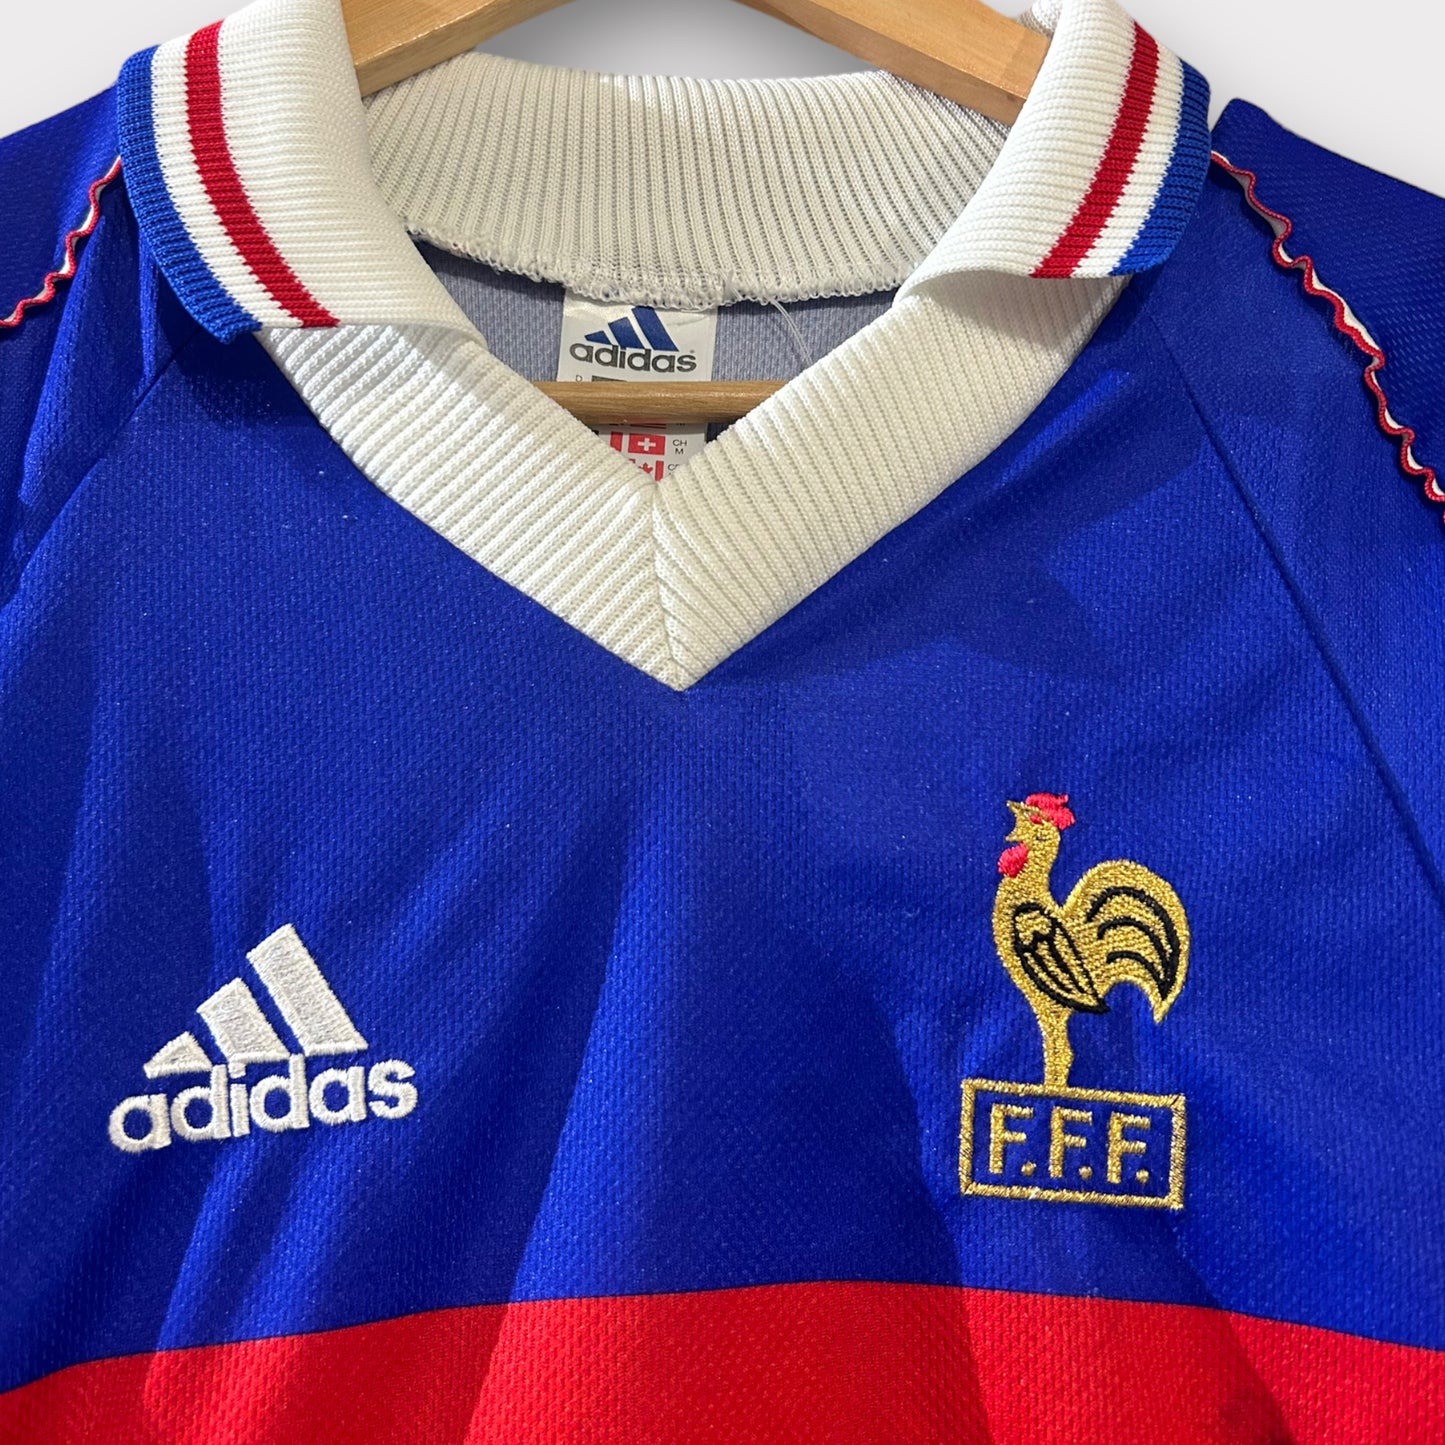 France 1998 Home Shirt (Medium)